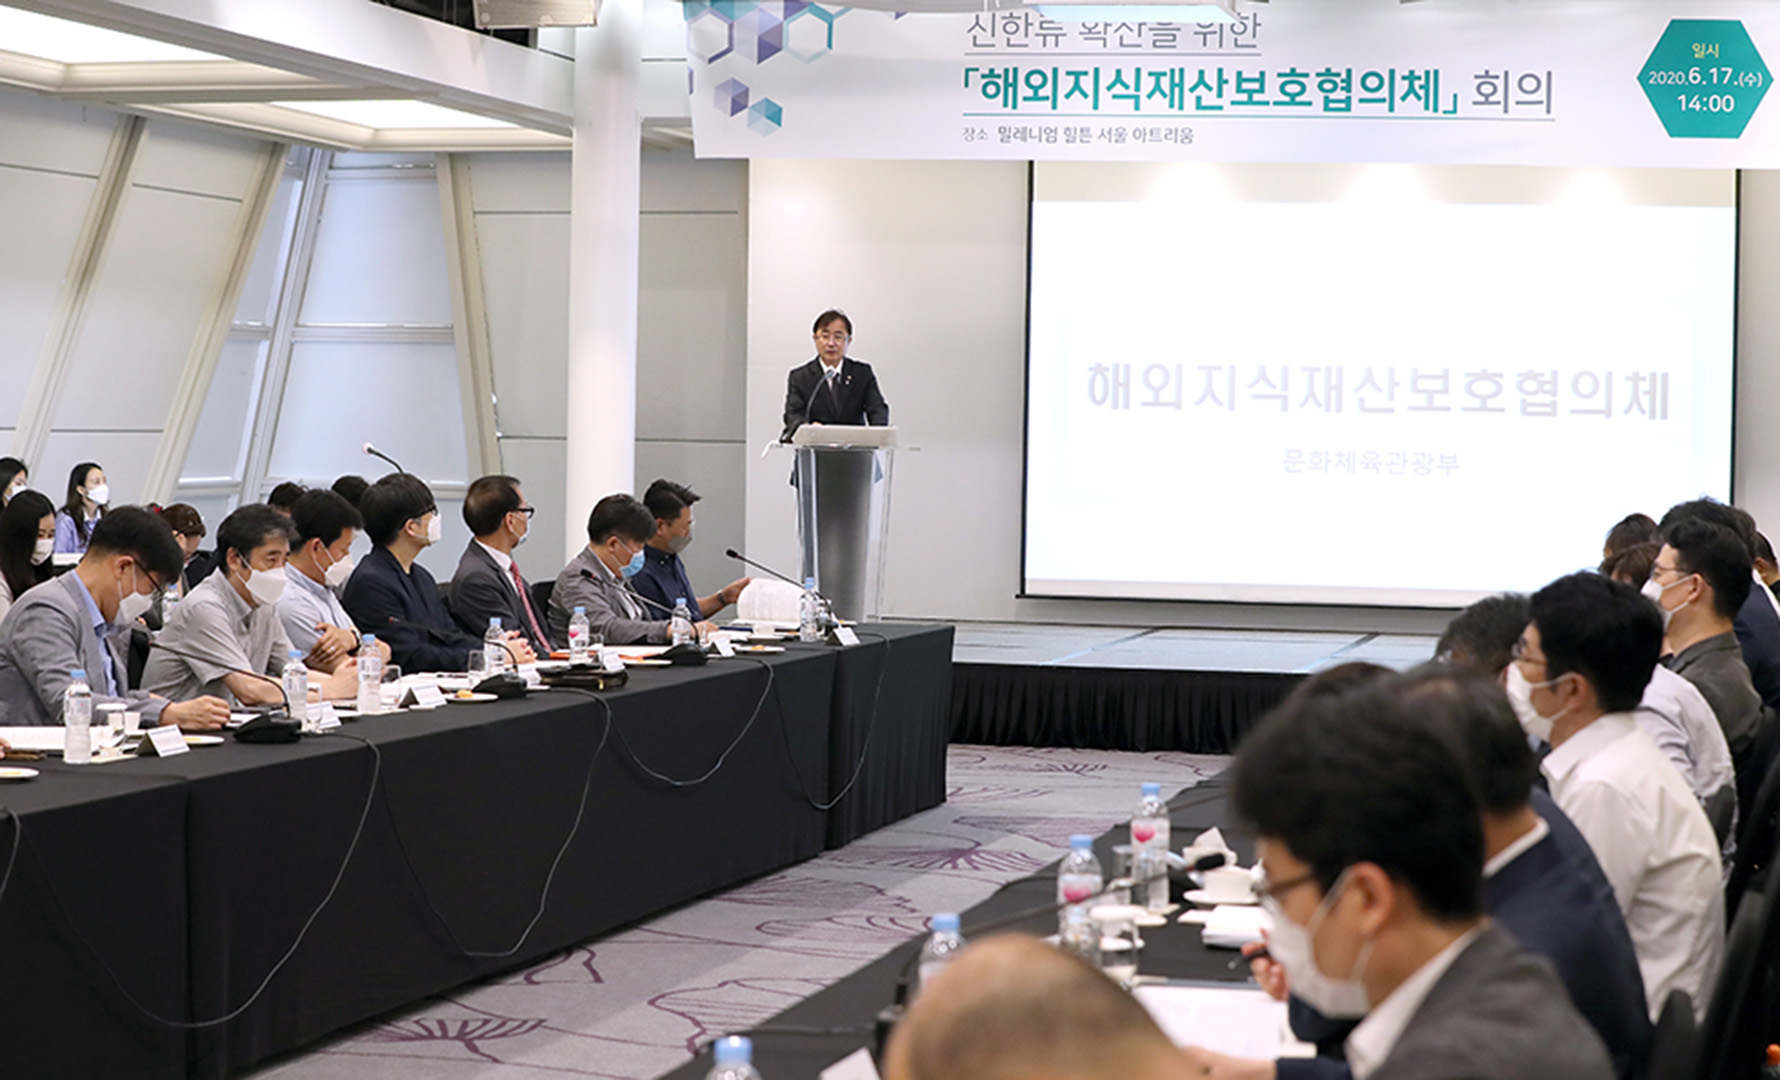 ‘해외지식재산보호협의체’ 개최(2020. 06. 17.)